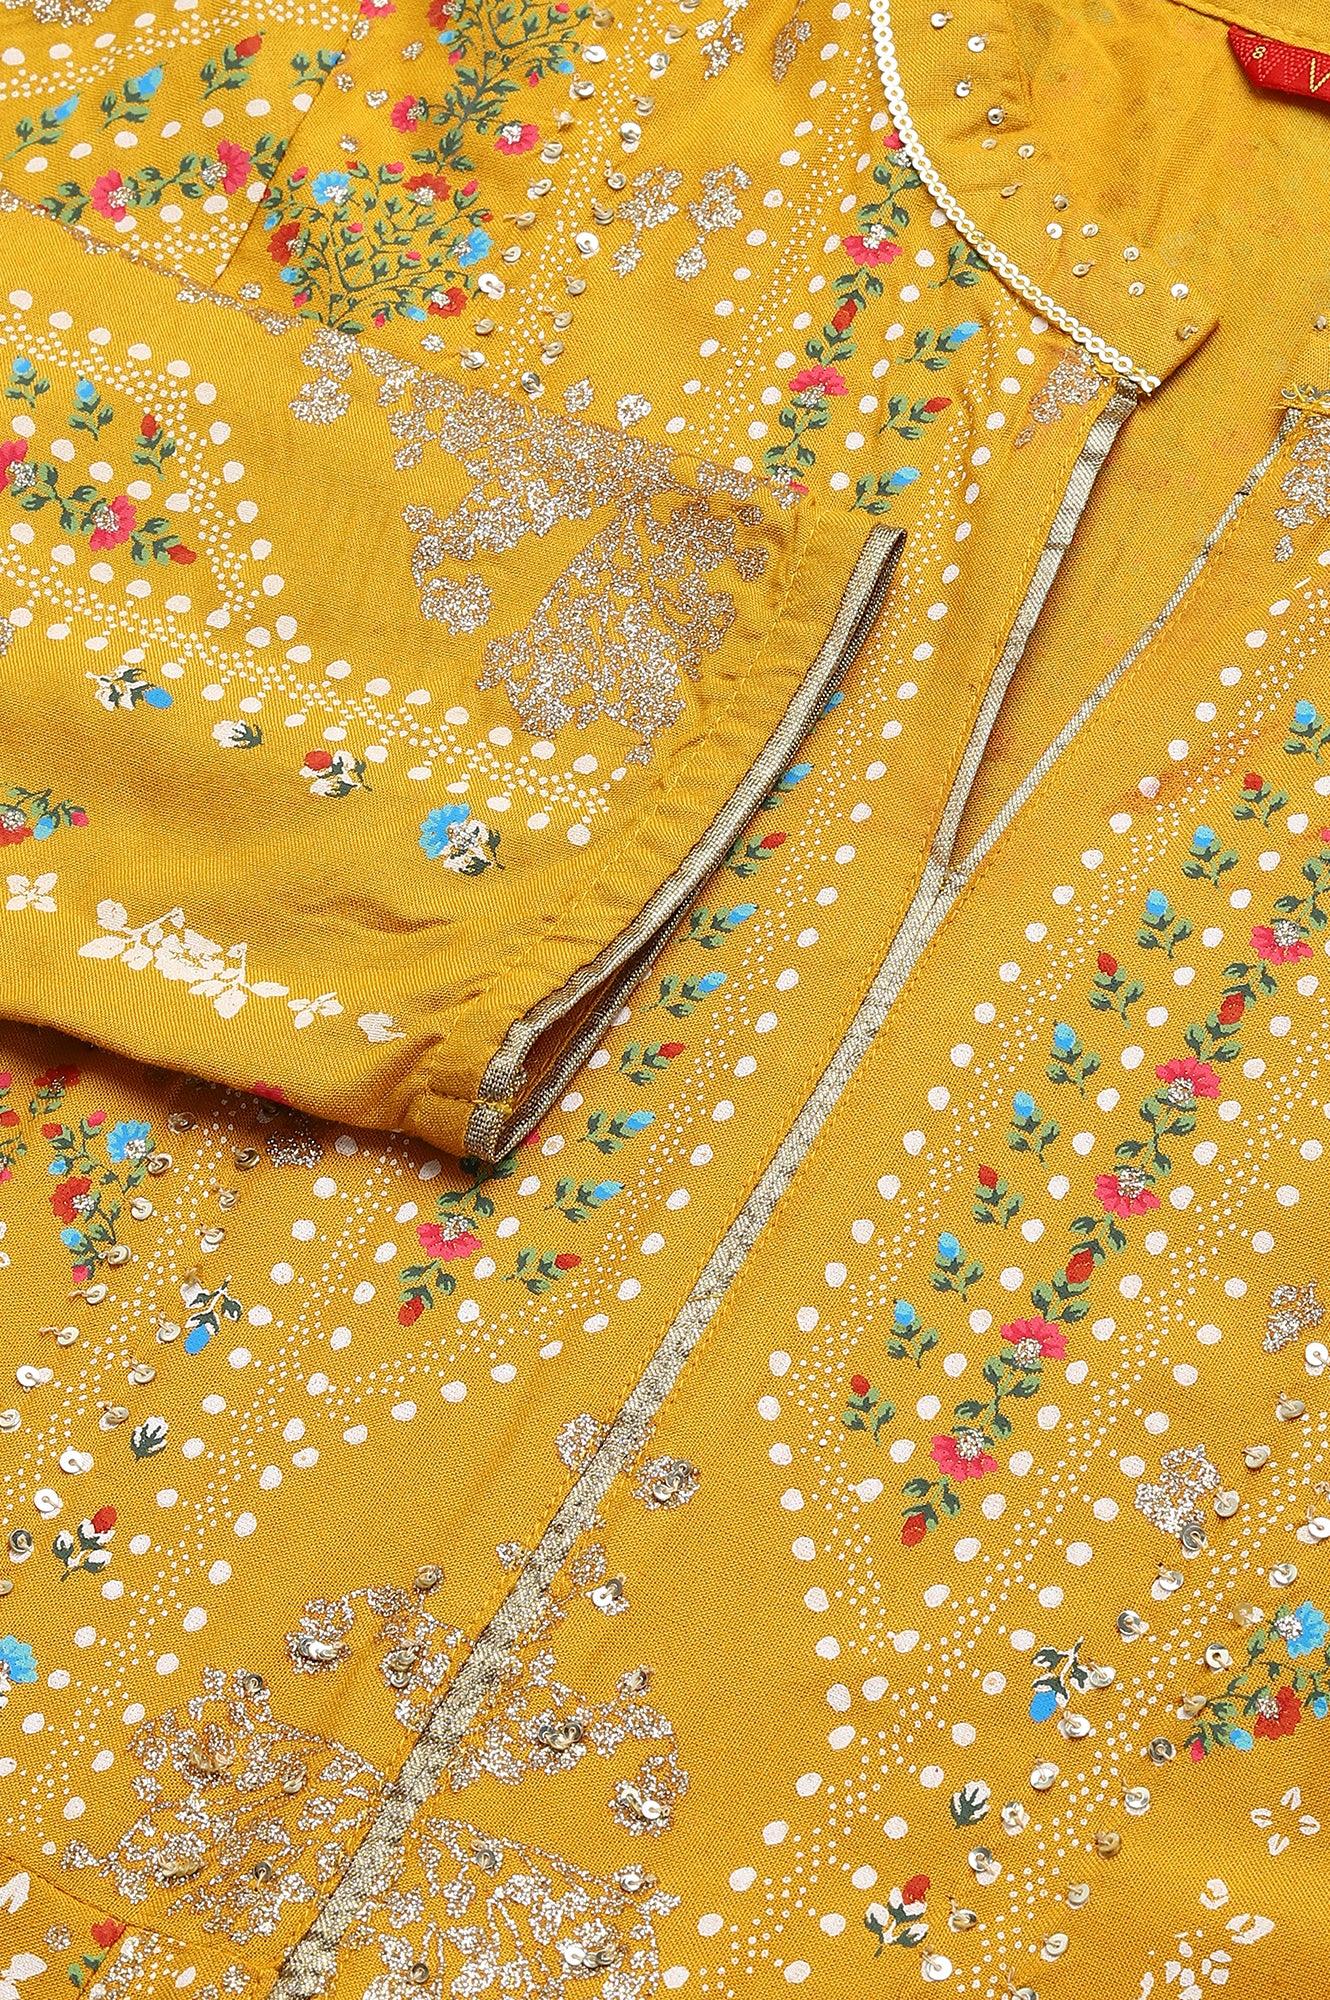 Mustard Yellow Kalidar Printed Dress - wforwoman